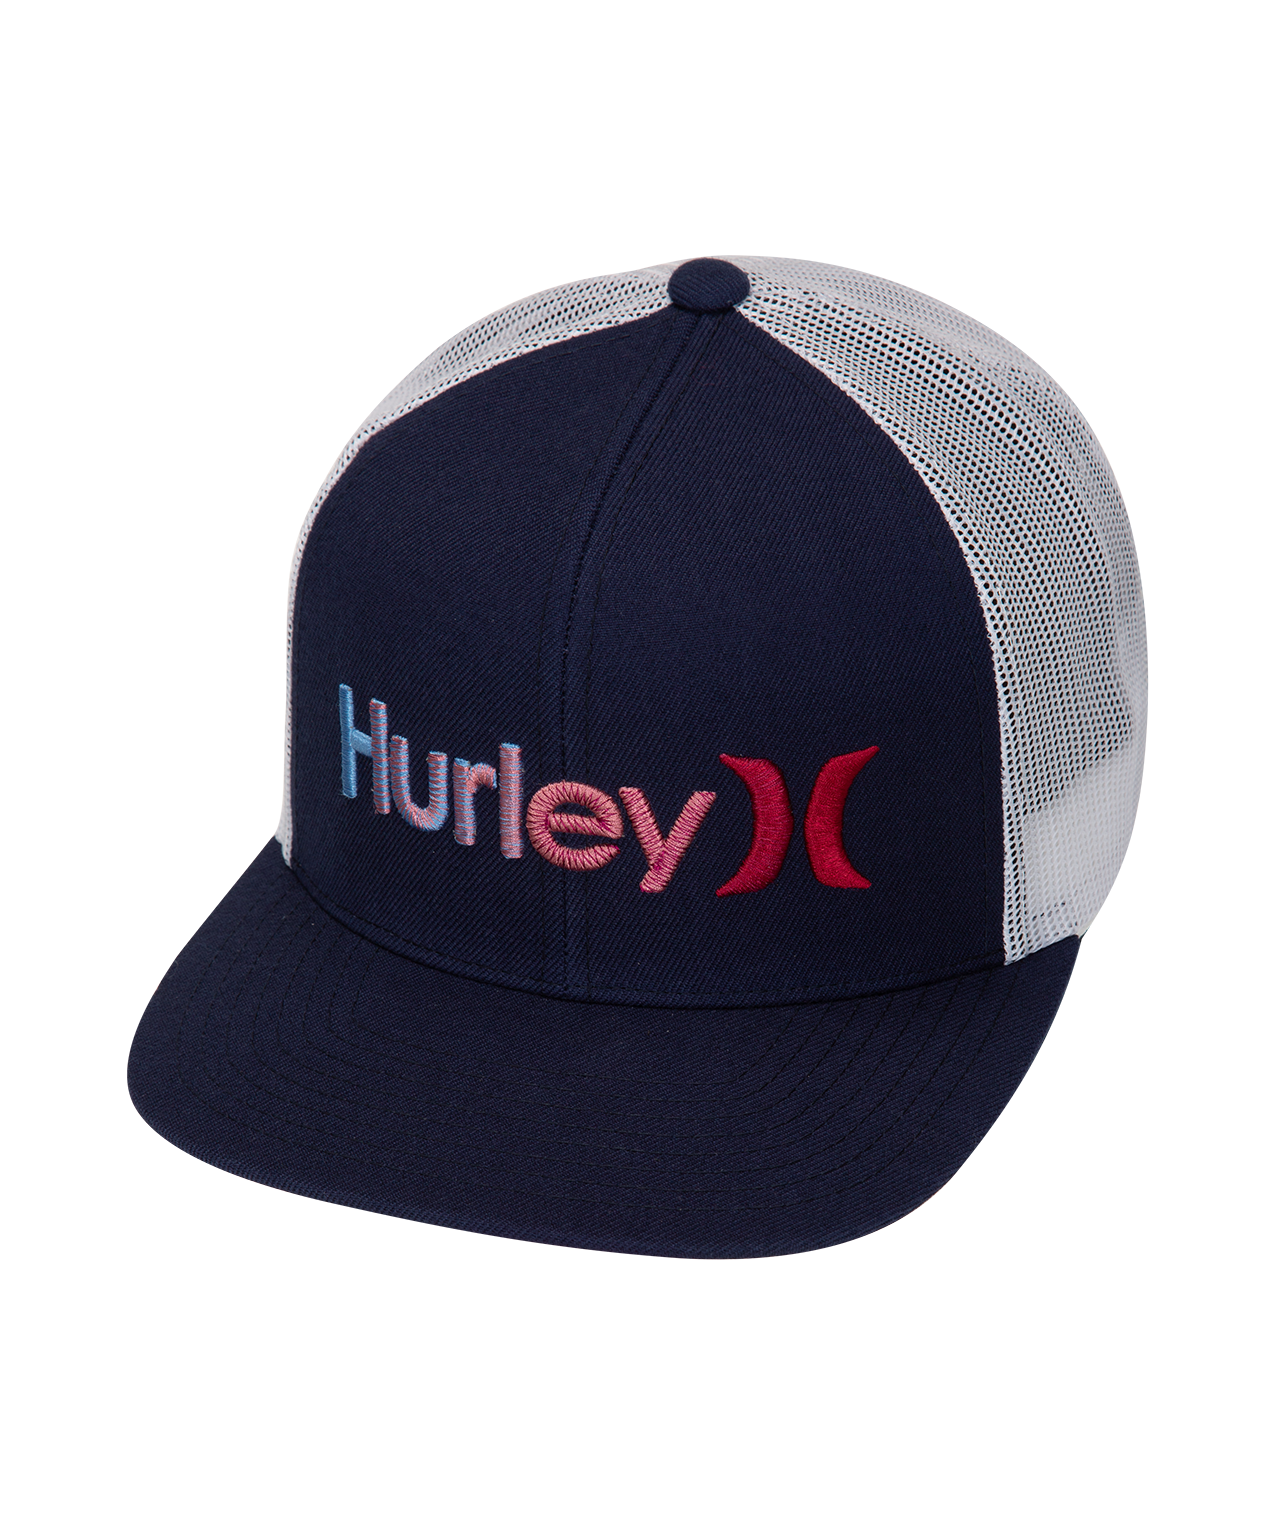 HURLEY M ONE&ONLY GRADIENT HAT 434 AV4453